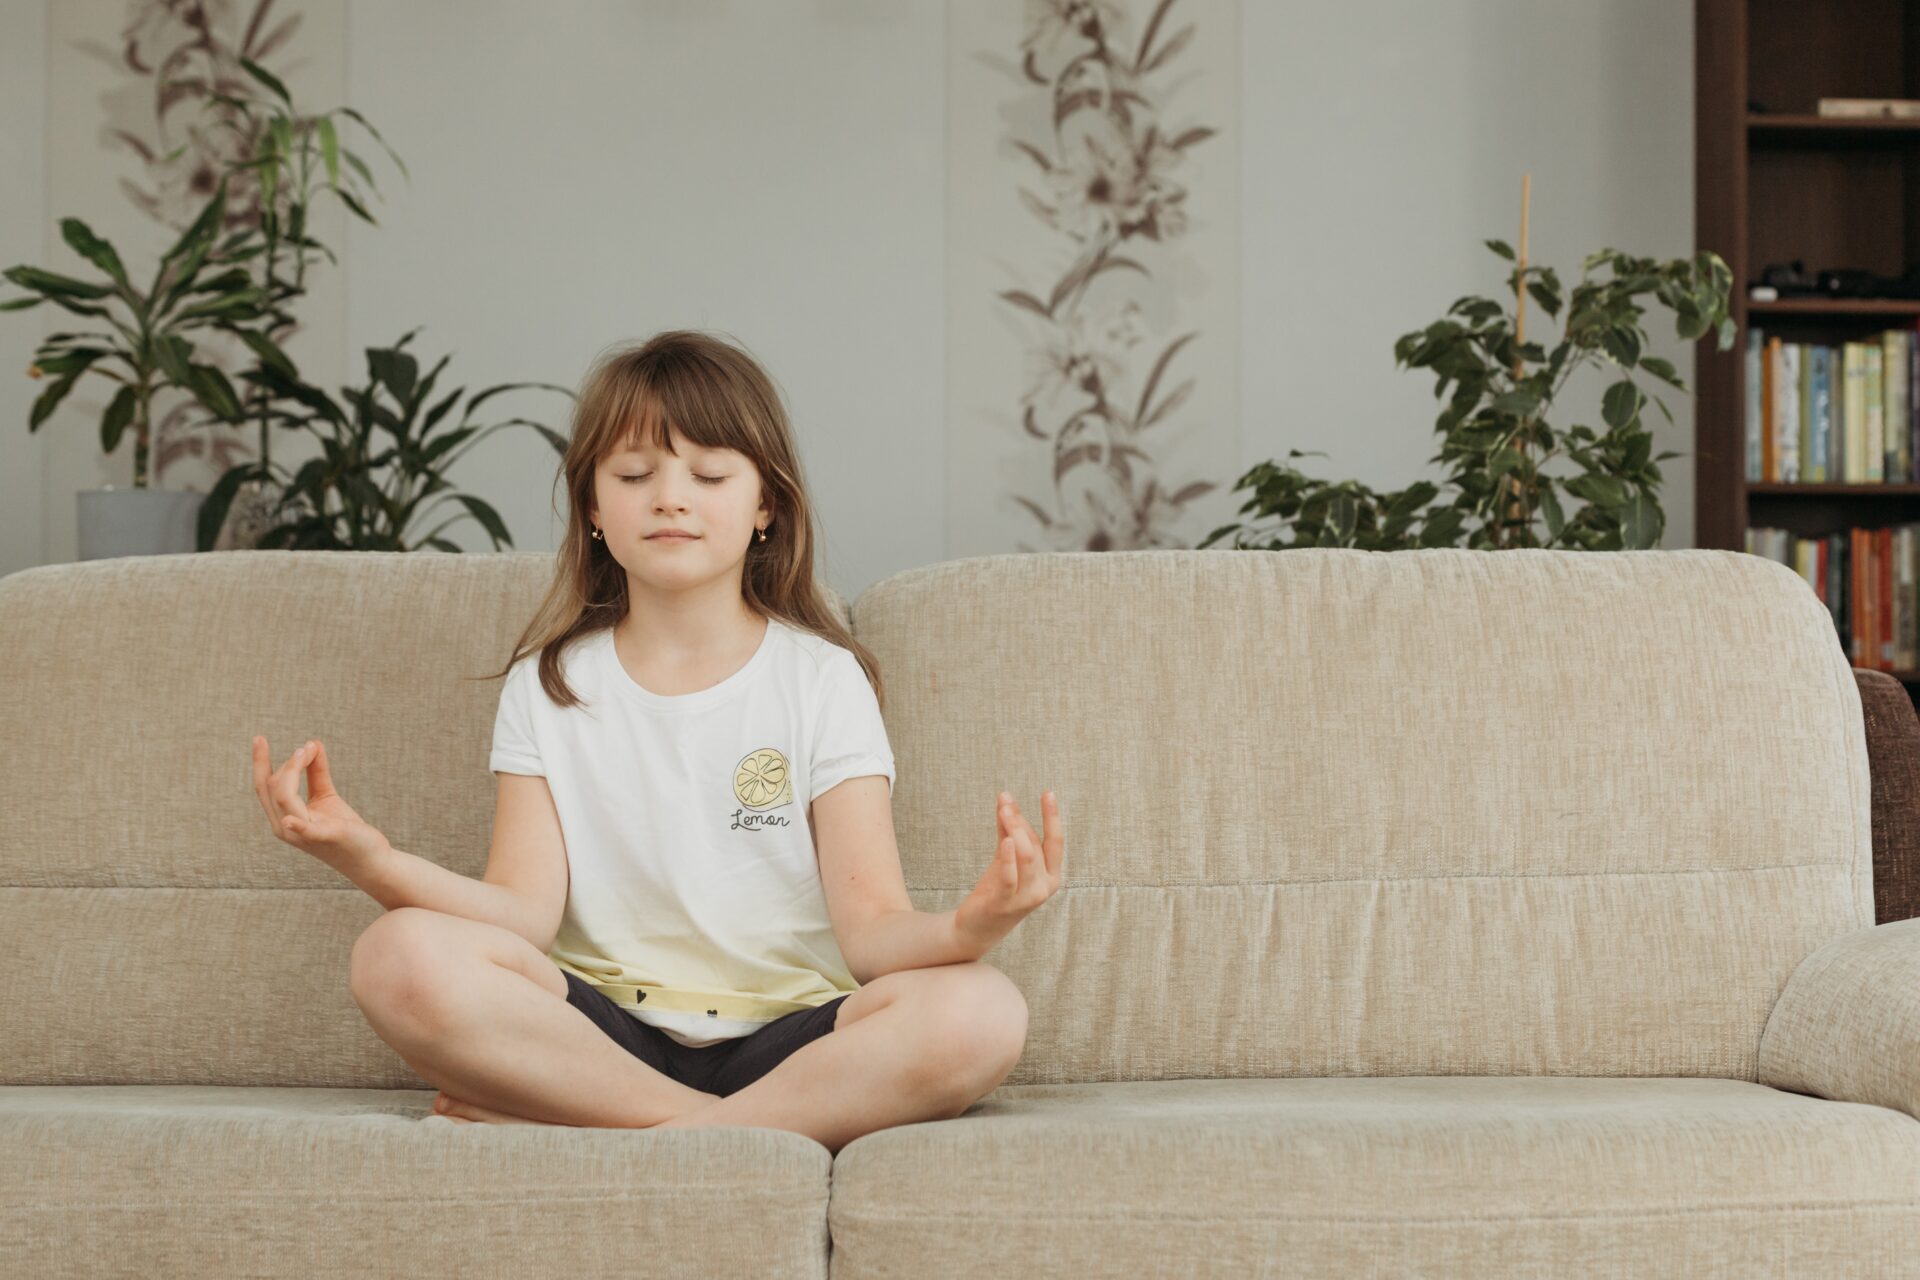 Importancia y beneficios de enseñar a los niños a meditar